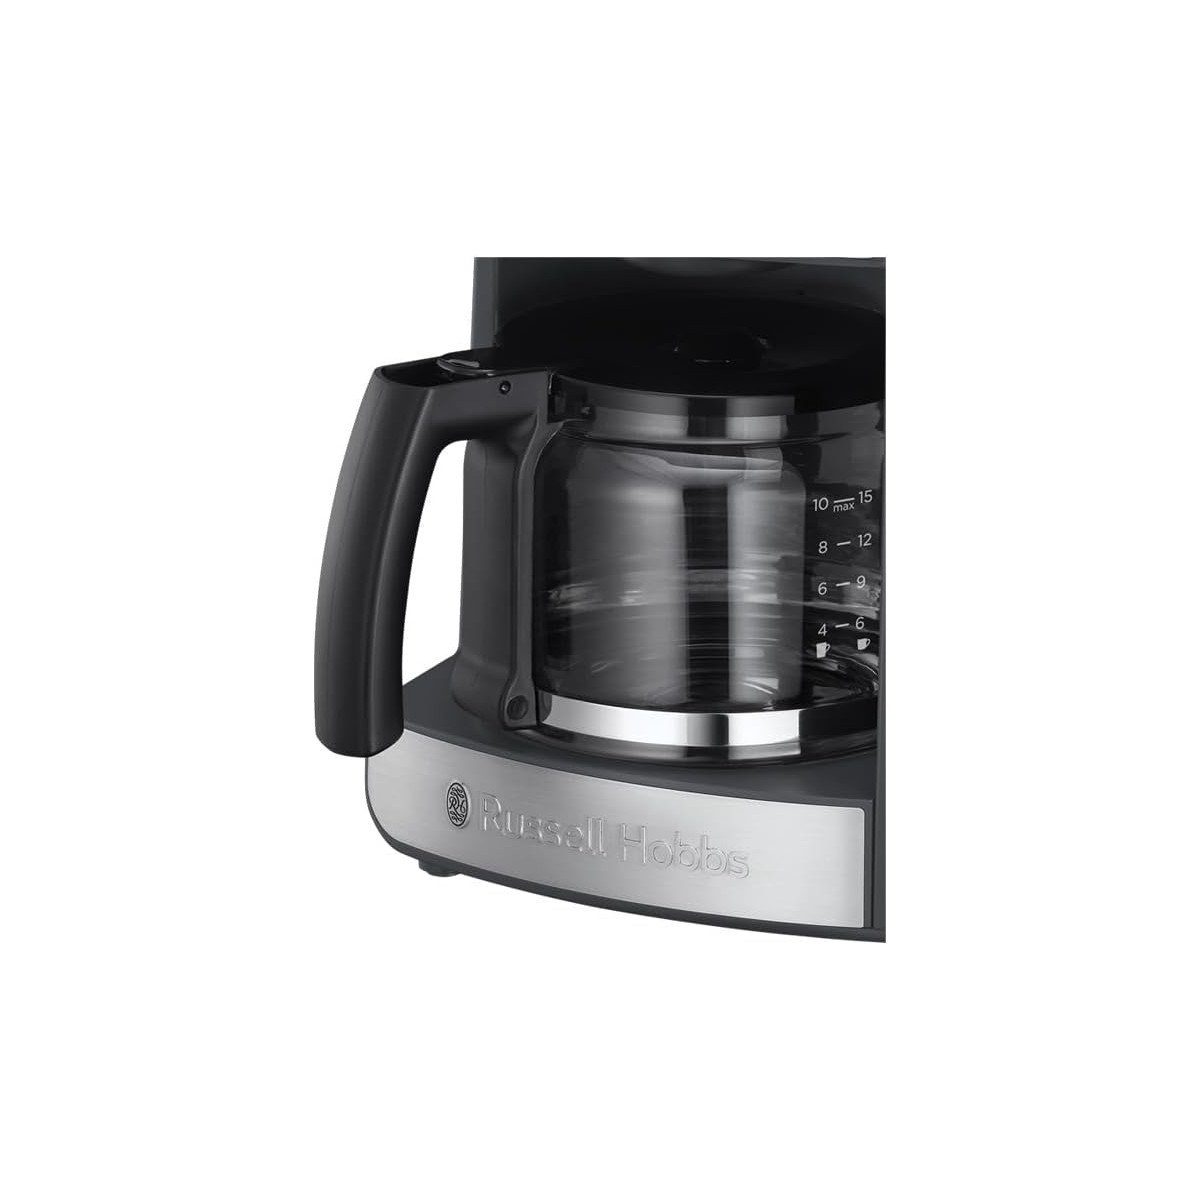 Filterkaffeemaschine 25610-56 RUSSELL für Kaffeemaschine 700372 Grind&Brew Ersatzglaskanne HOBBS